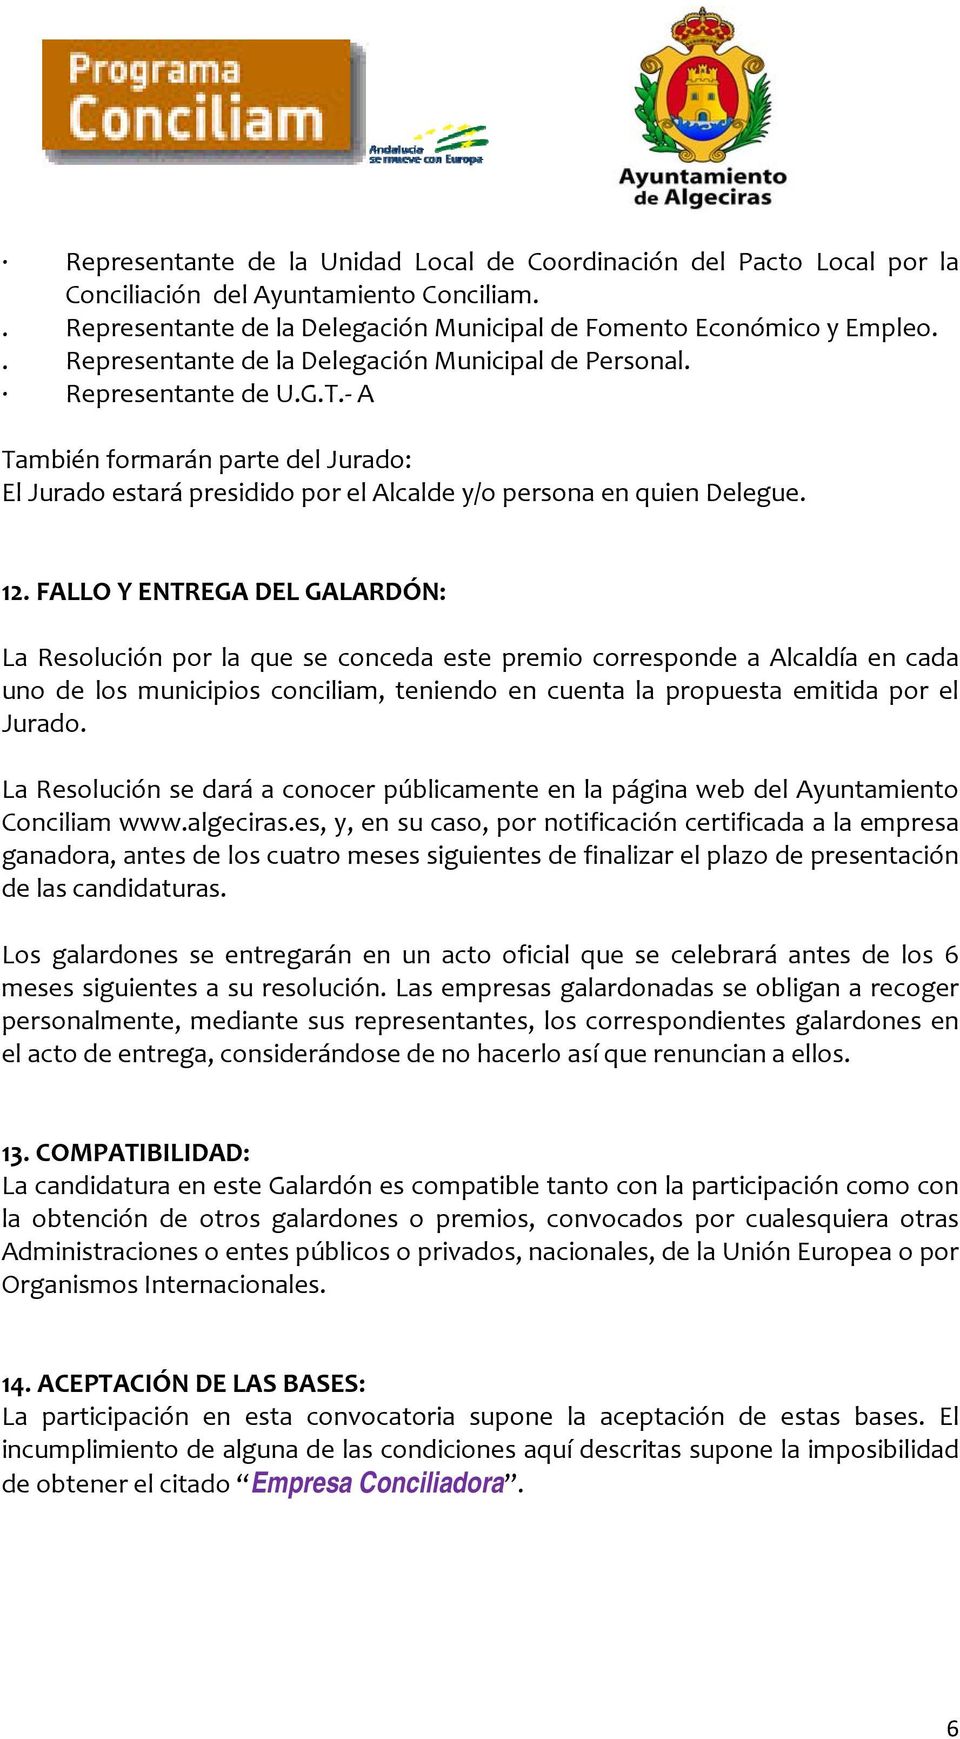 FALLO Y ENTREGA DEL GALARDÓN: La Resolución por la que se conceda este premio corresponde a Alcaldía en cada uno de los municipios conciliam, teniendo en cuenta la propuesta emitida por el Jurado.